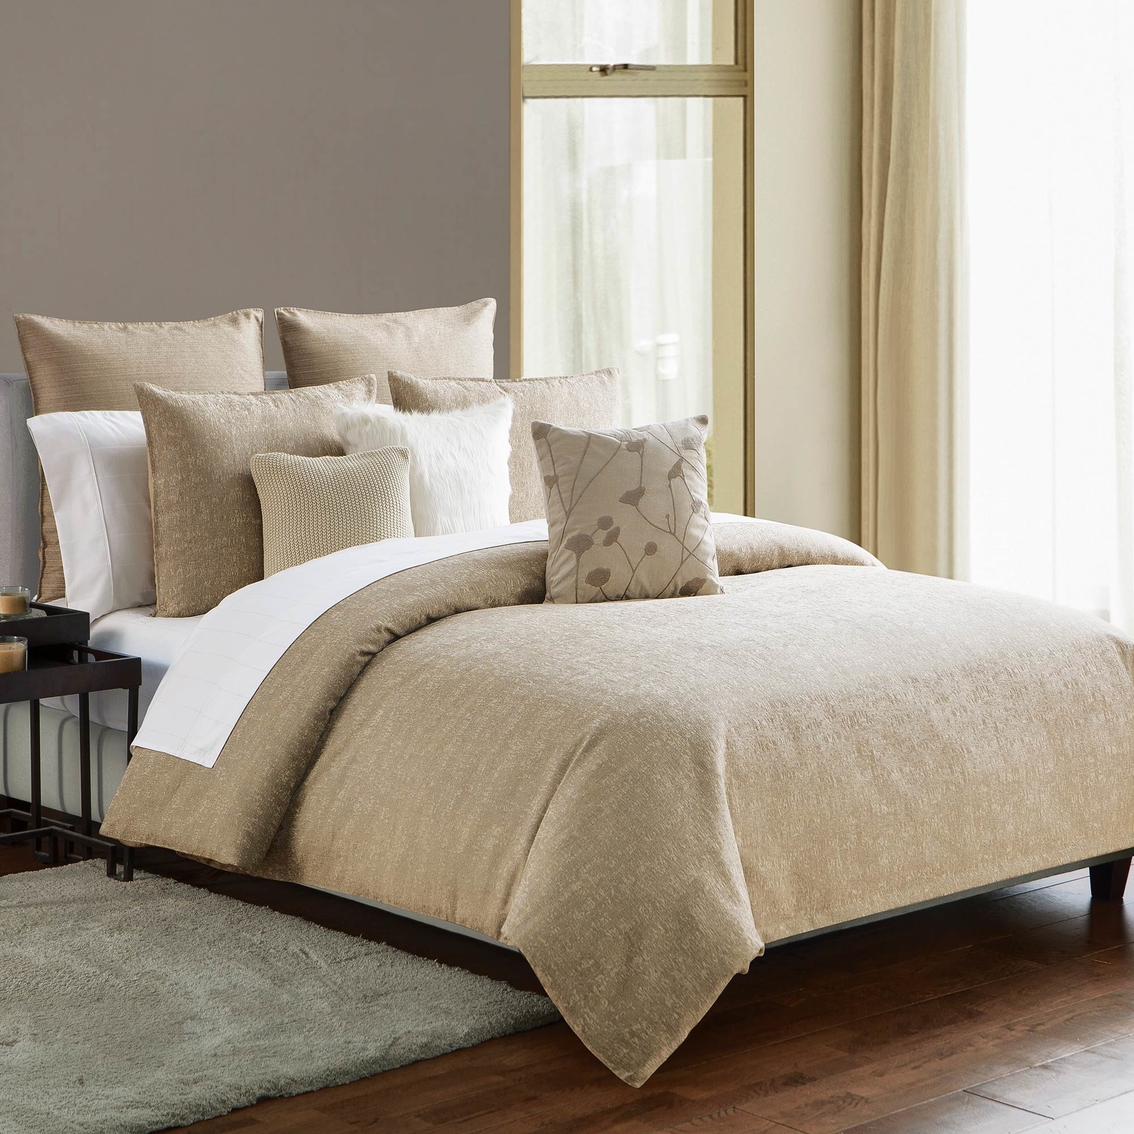 Highline Bedding Co. Driftwood Comforter Set - Image 2 of 3